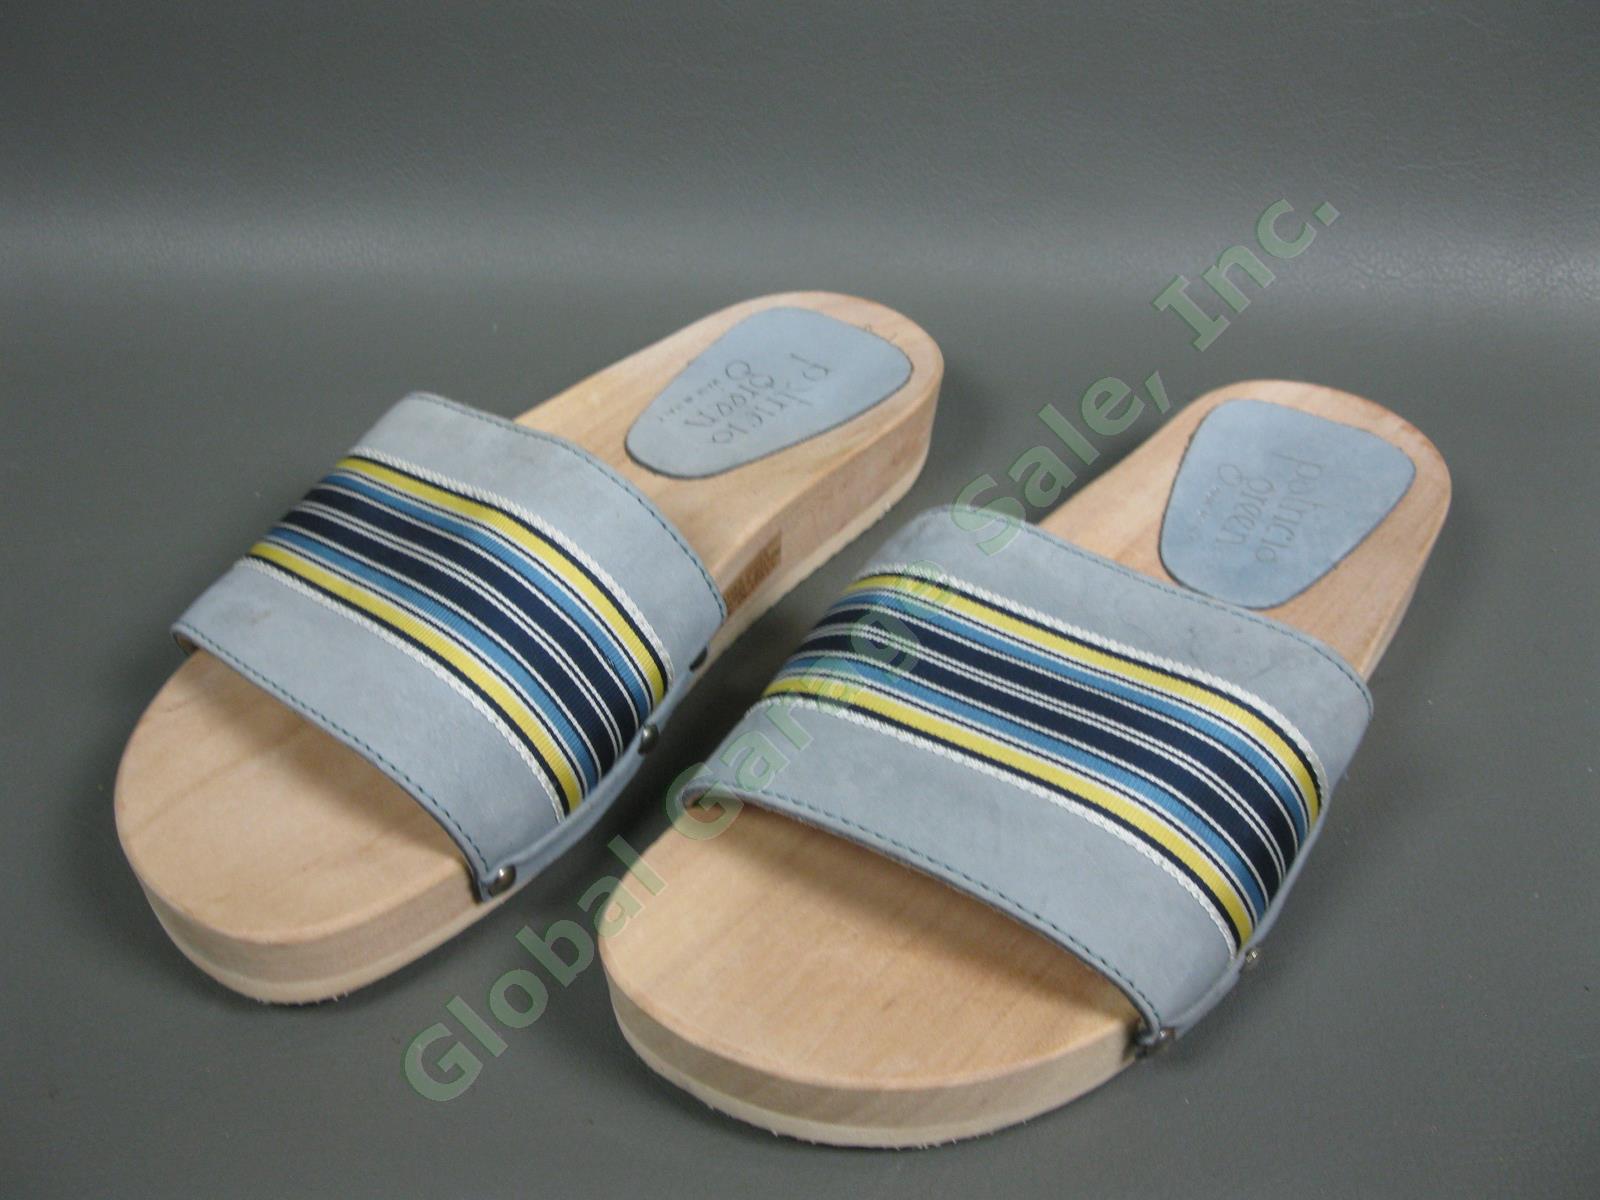 6 Pair Womens Walking Slip-In Sandal Size 8.5M-9M Shoe Lot Naturalizer Ryka Impo 1